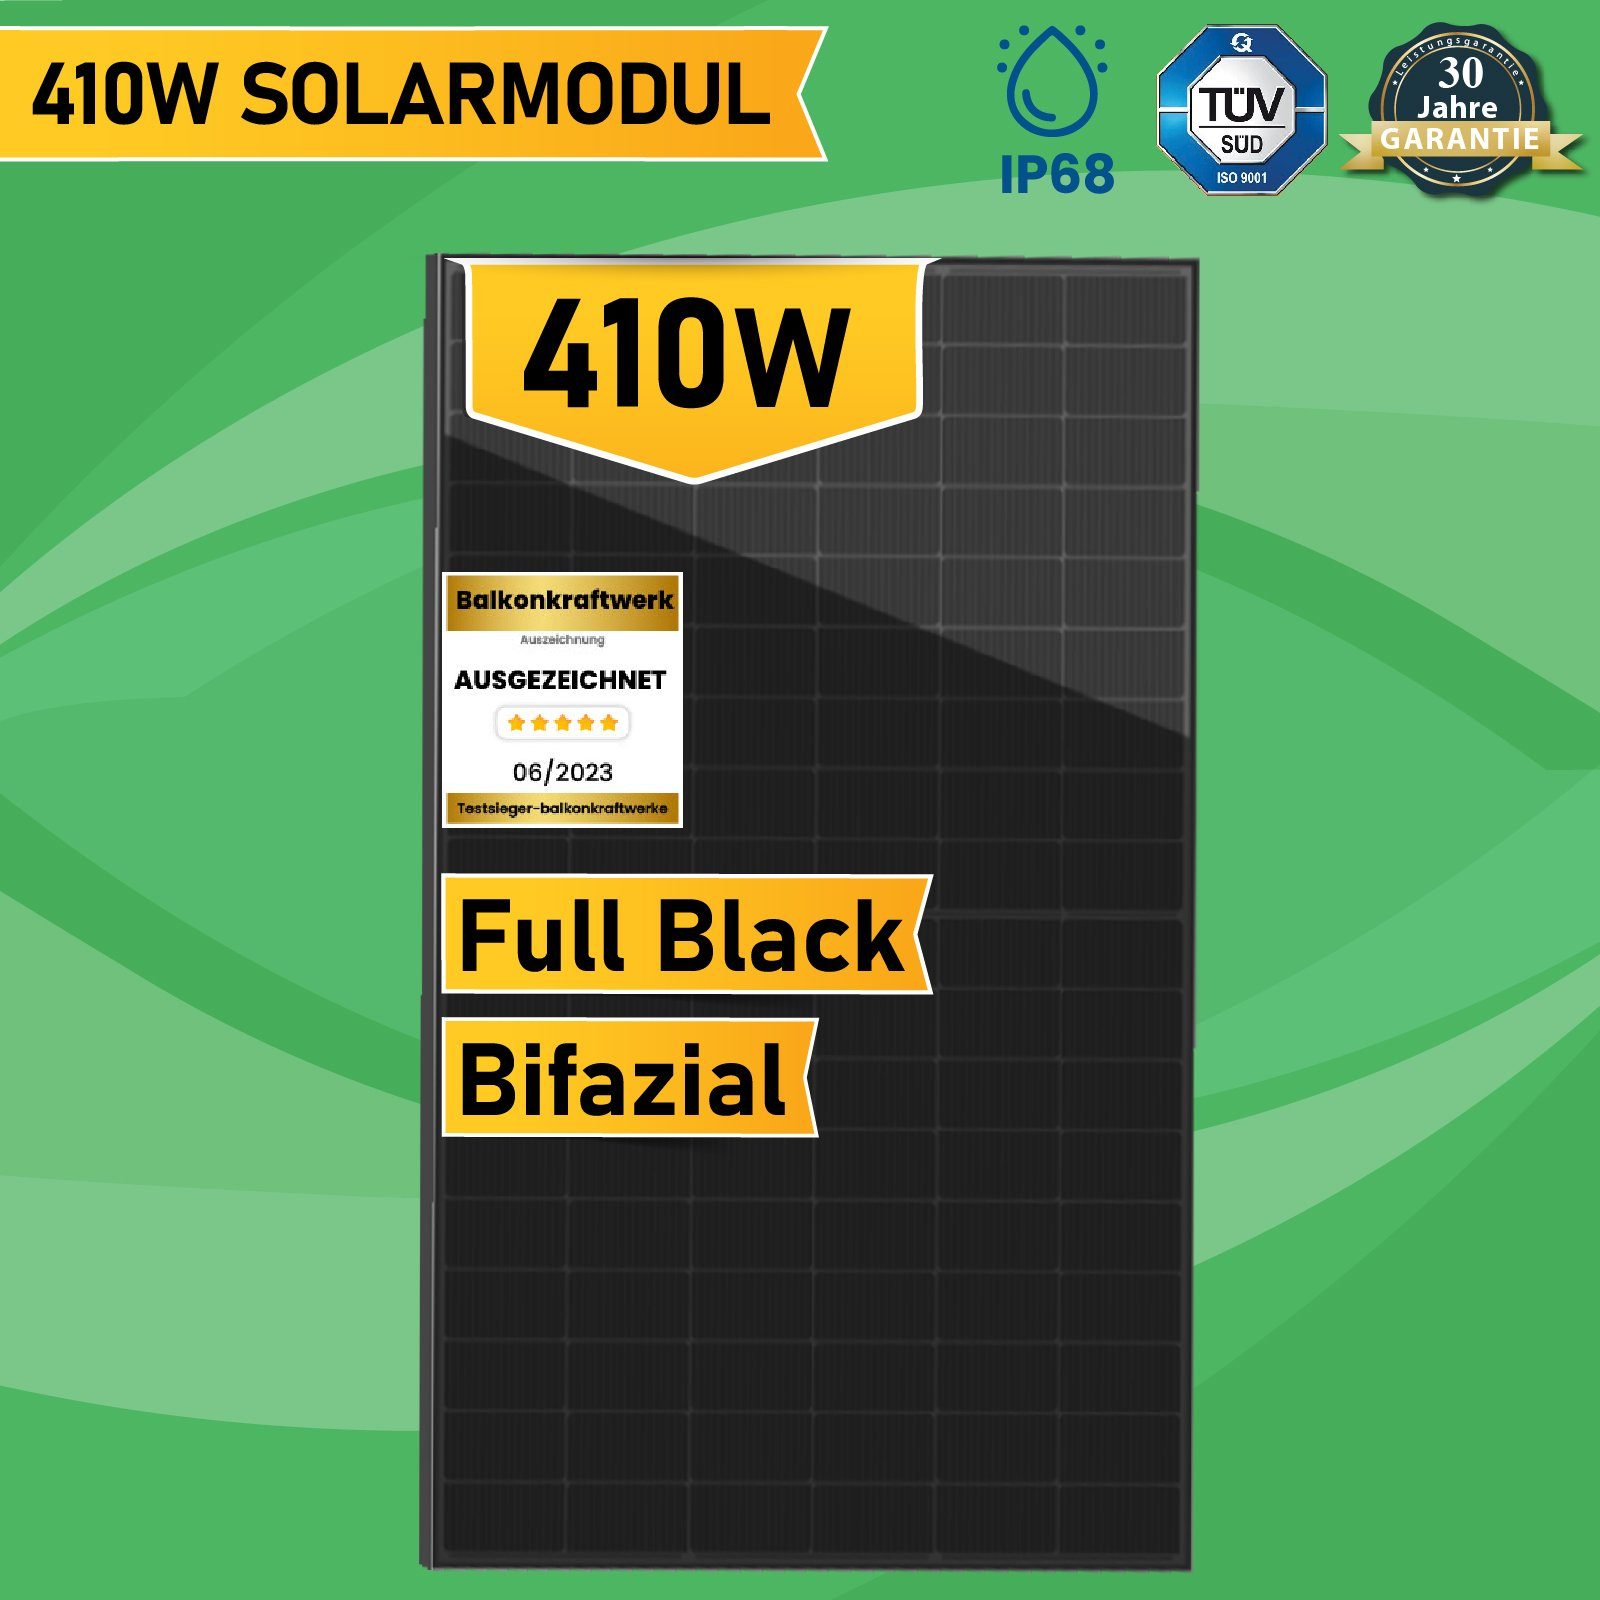 BIFAZIAL Solaranlage FULL-BLACK x GLAS-GLAS PV MODUL 4 Campergold HT54-18X(PD)-F 410W